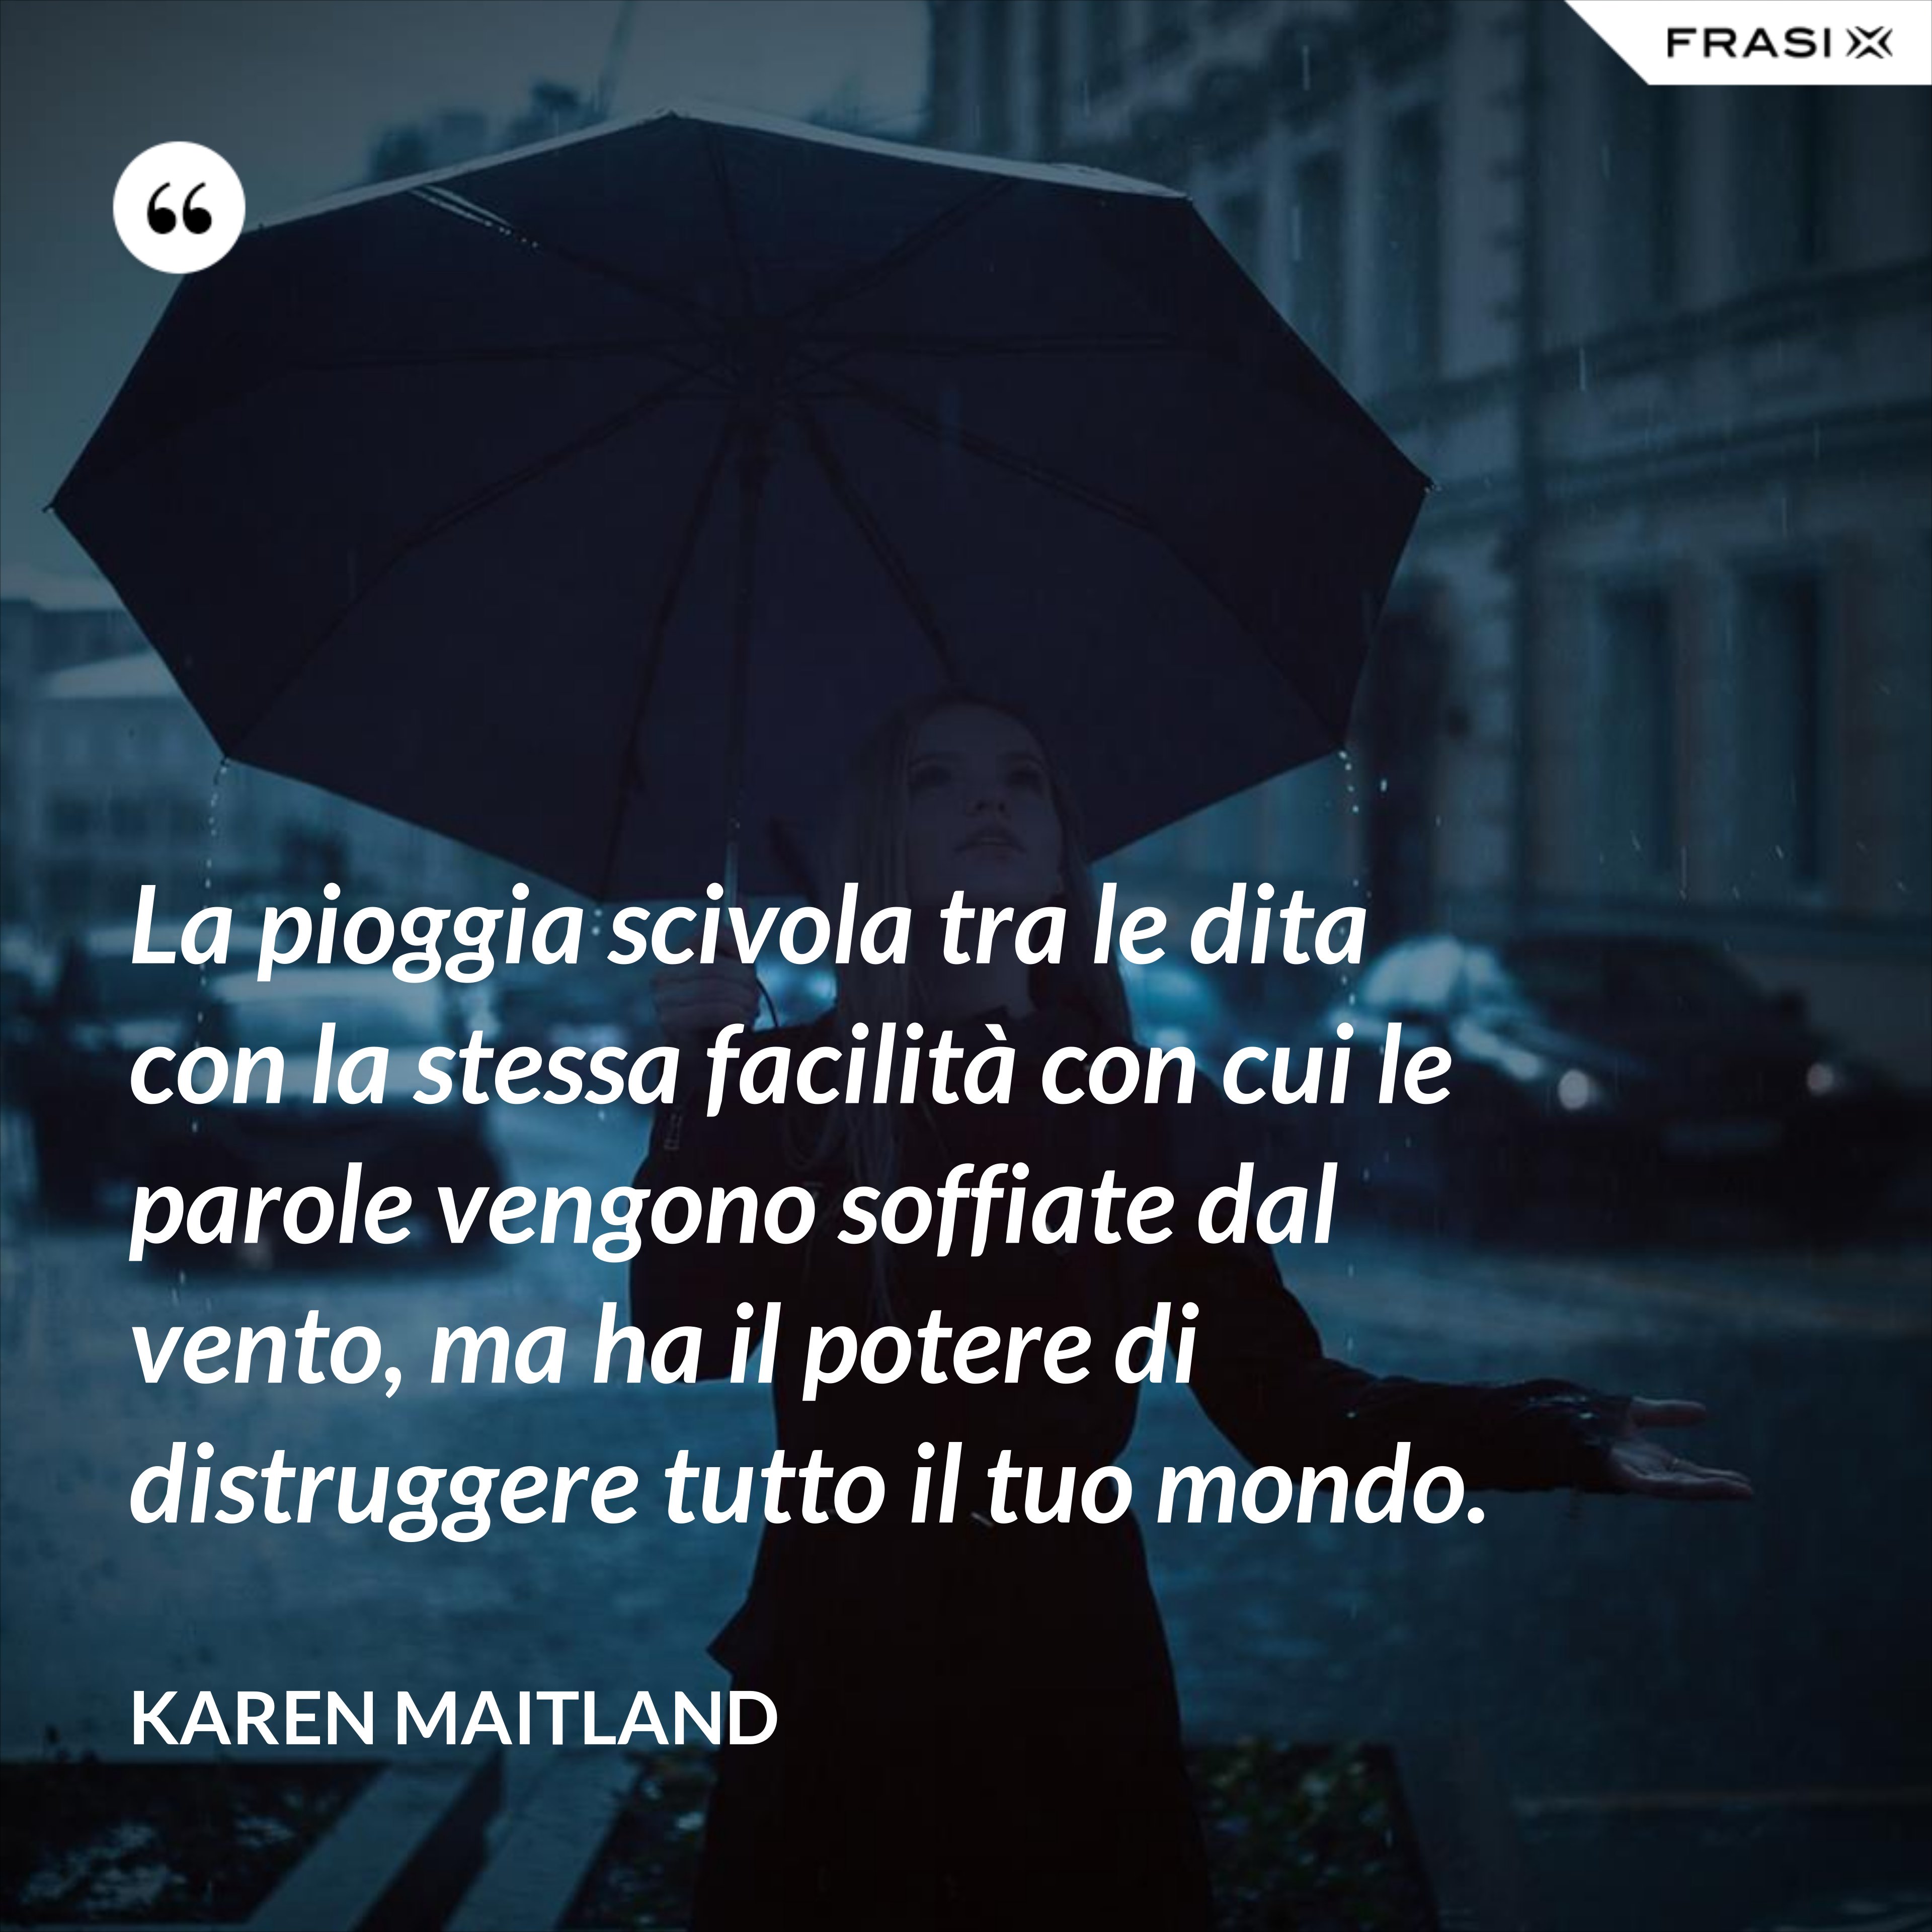 La pioggia scivola tra le dita con la stessa facilità con cui le parole vengono soffiate dal vento, ma ha il potere di distruggere tutto il tuo mondo. - Karen Maitland